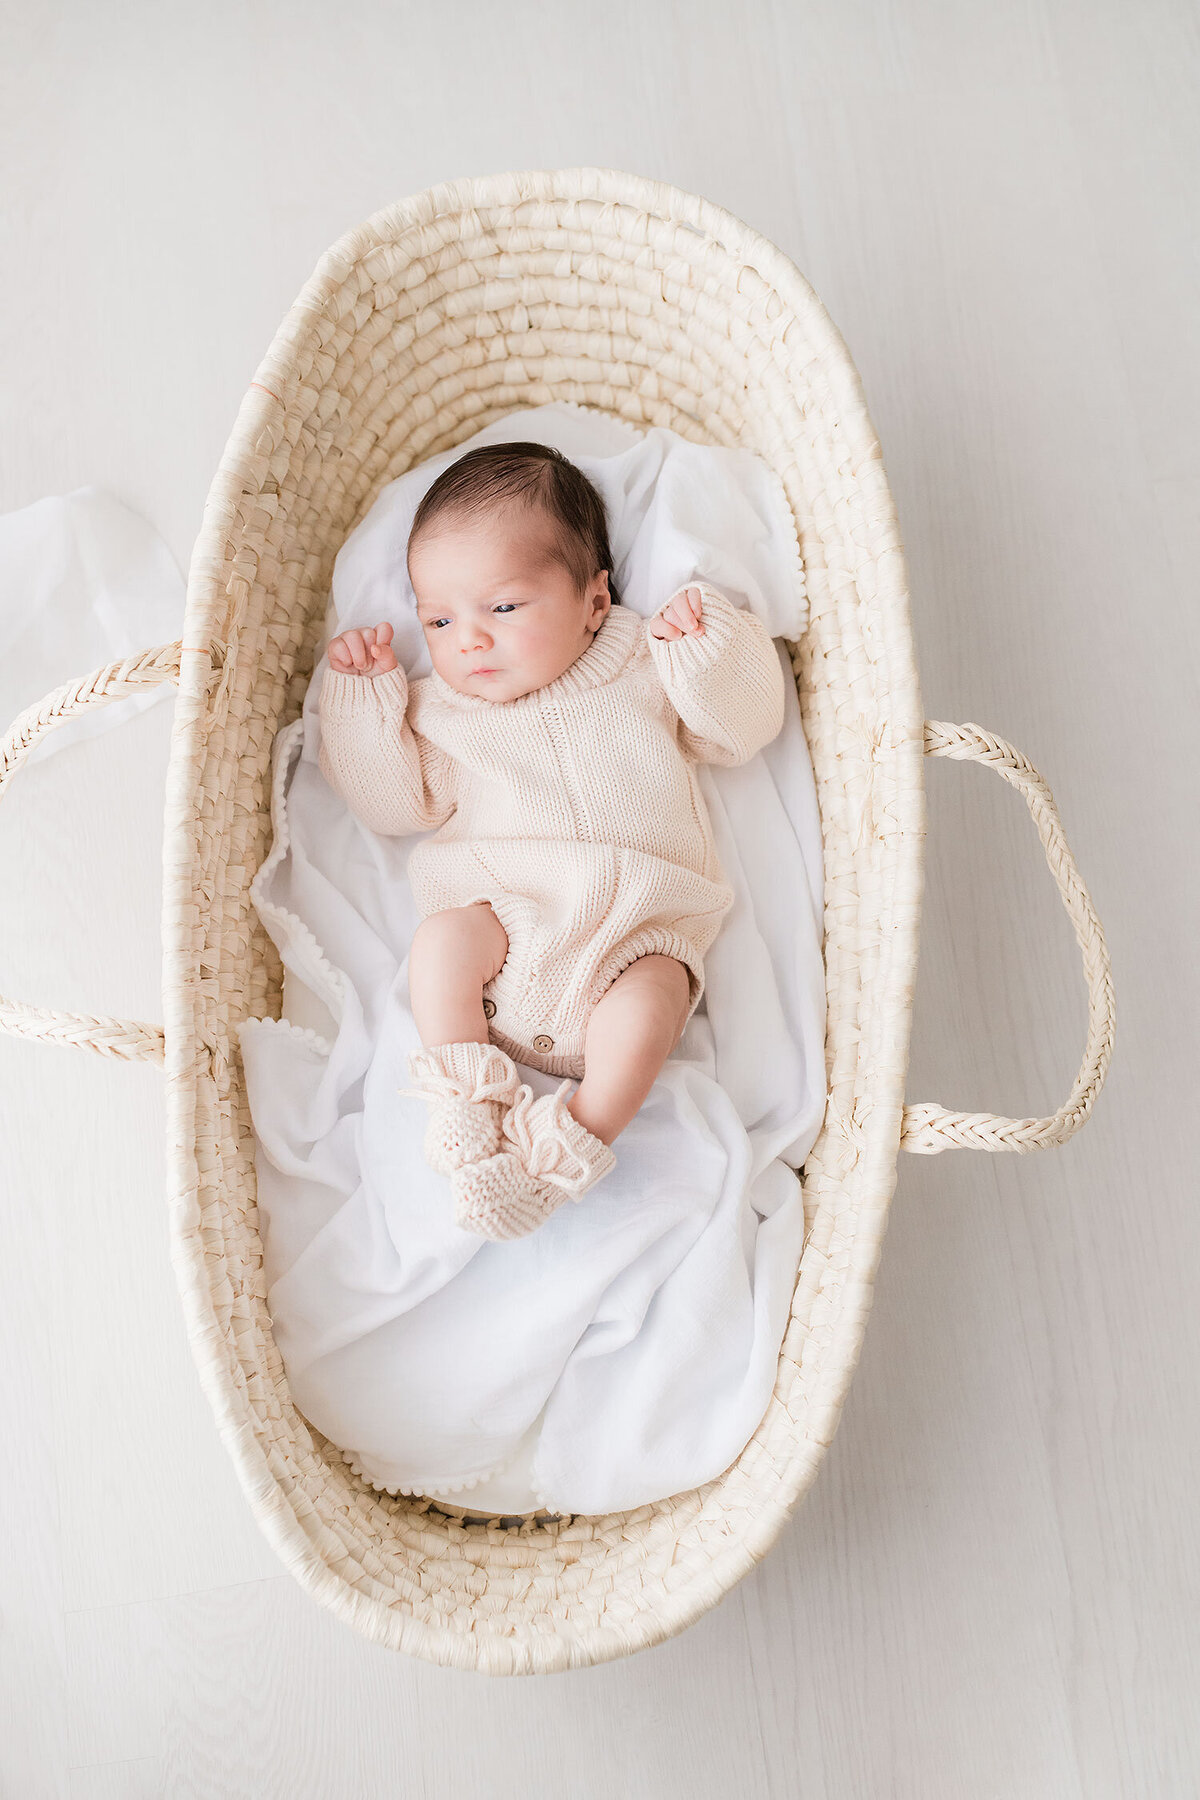 Destin-newborn-photographer-1